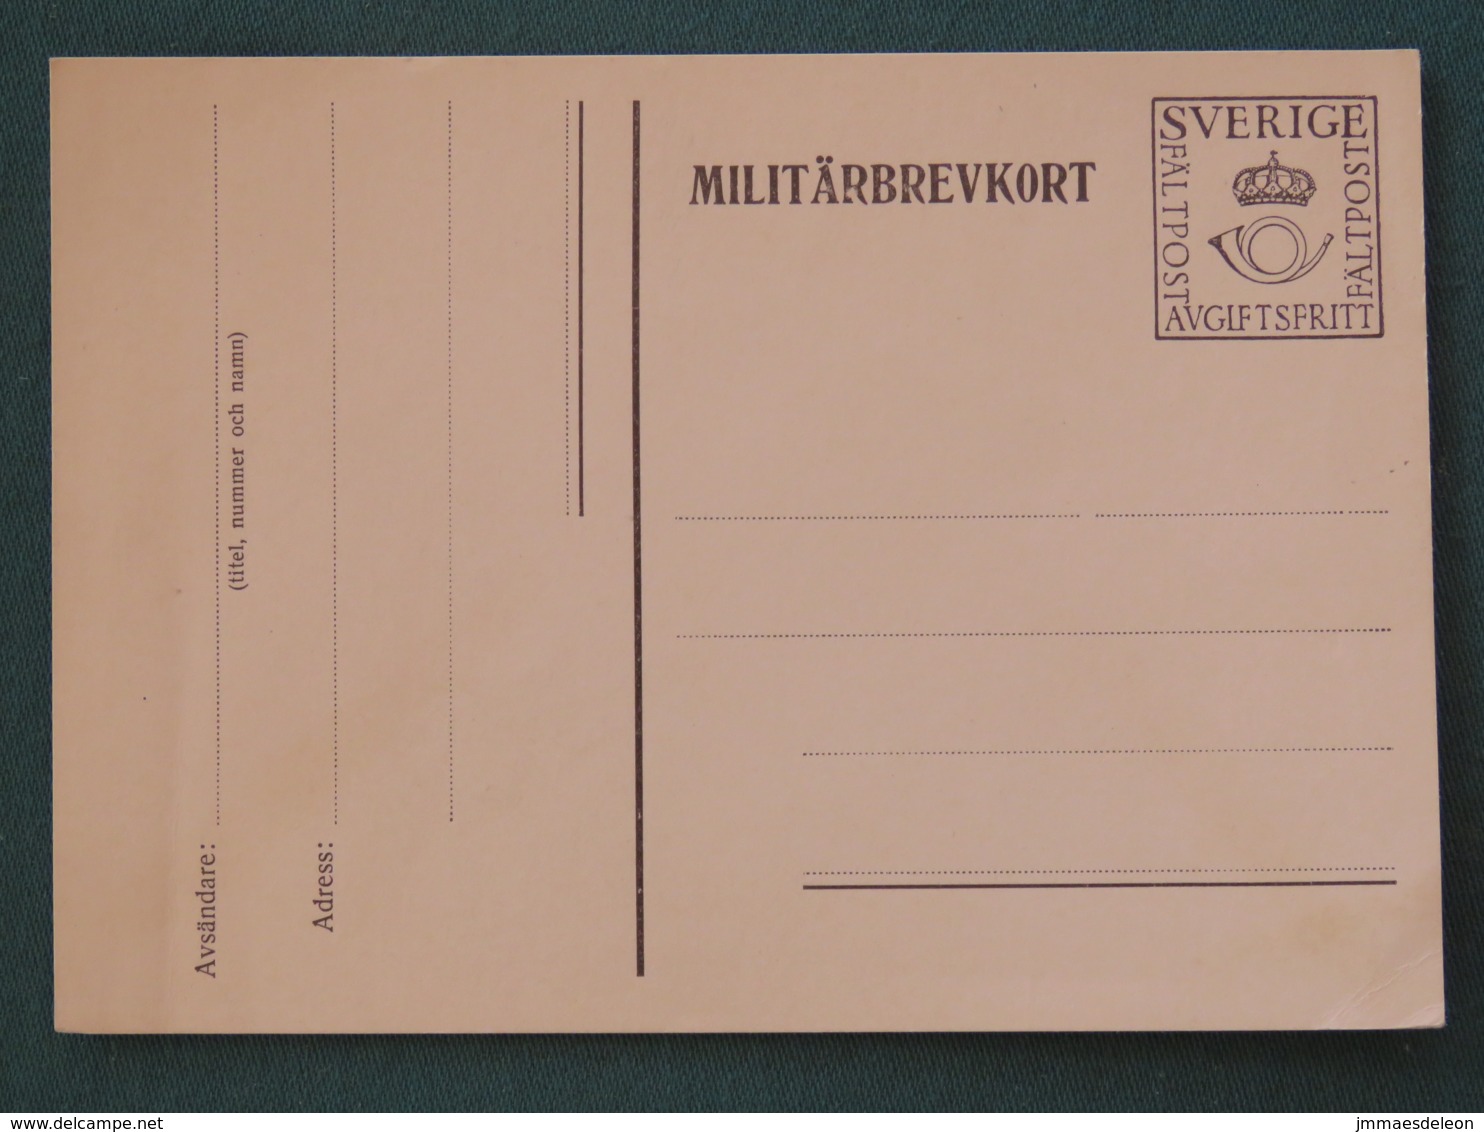 Sweden Around 1974 Military Army Unused Postcard - Militärmarken